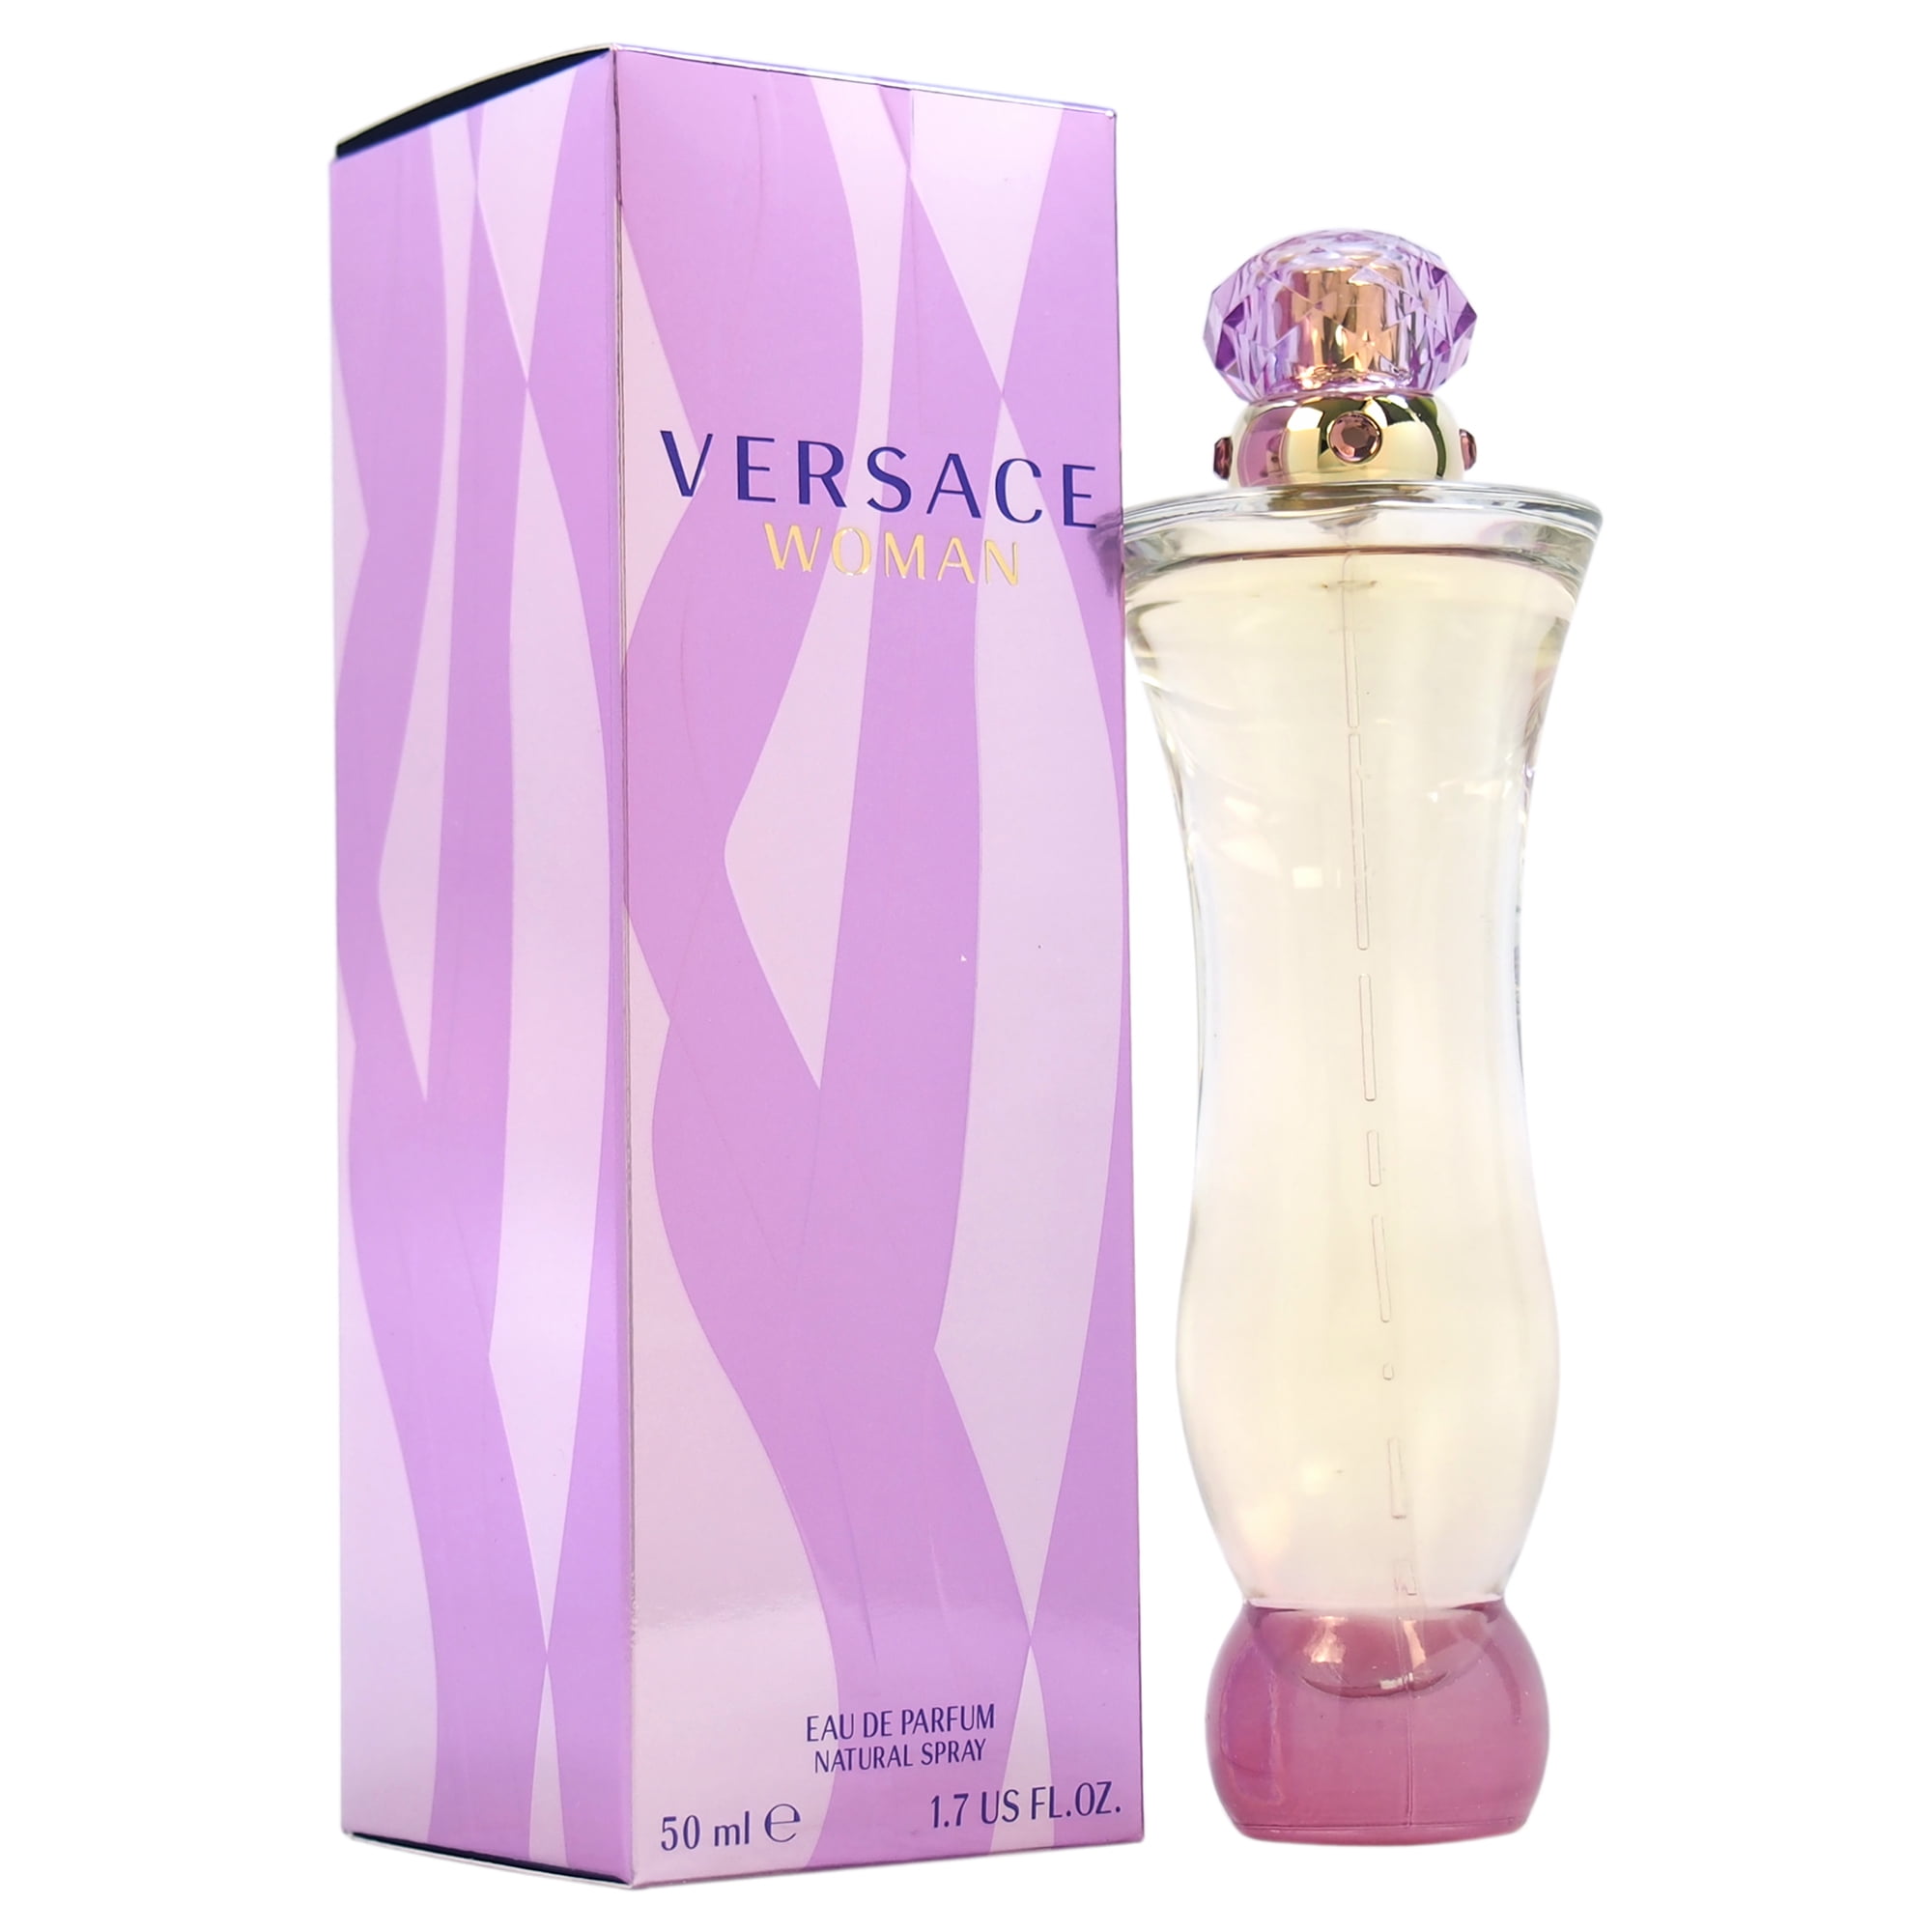 Versace - Versace Woman Eau De Parfum, Perfume for Women, 1.7 Oz